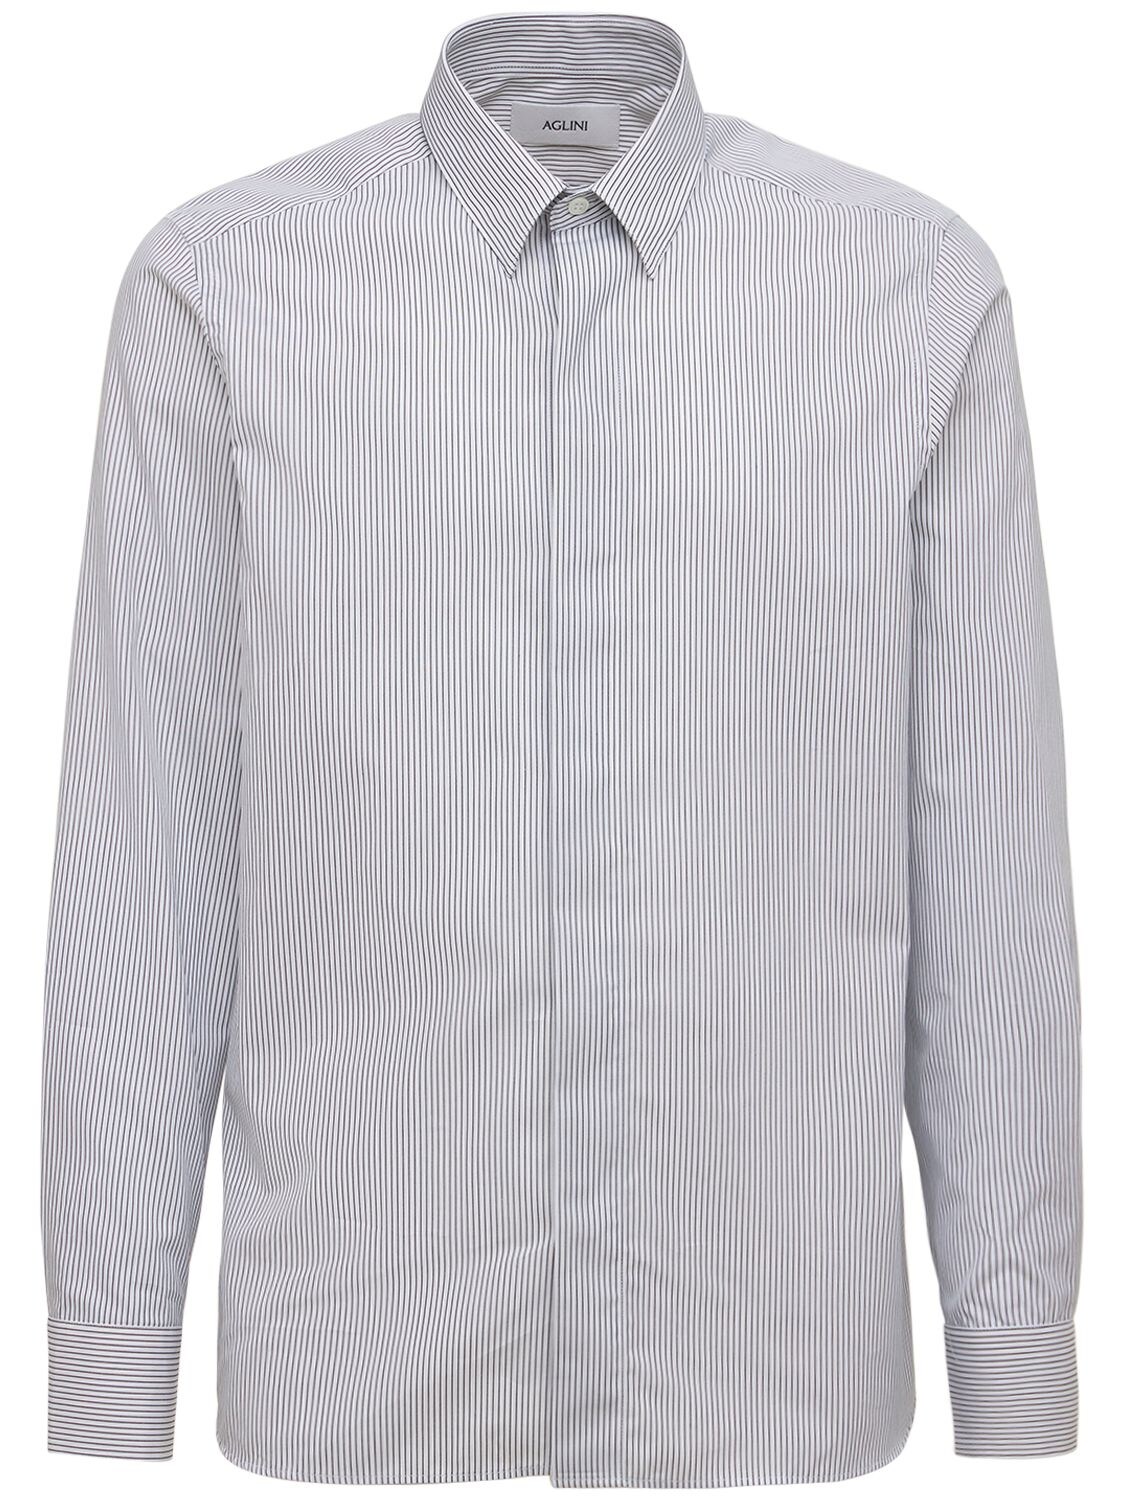 Aglini Striped Cotton Jersey Shirt In White